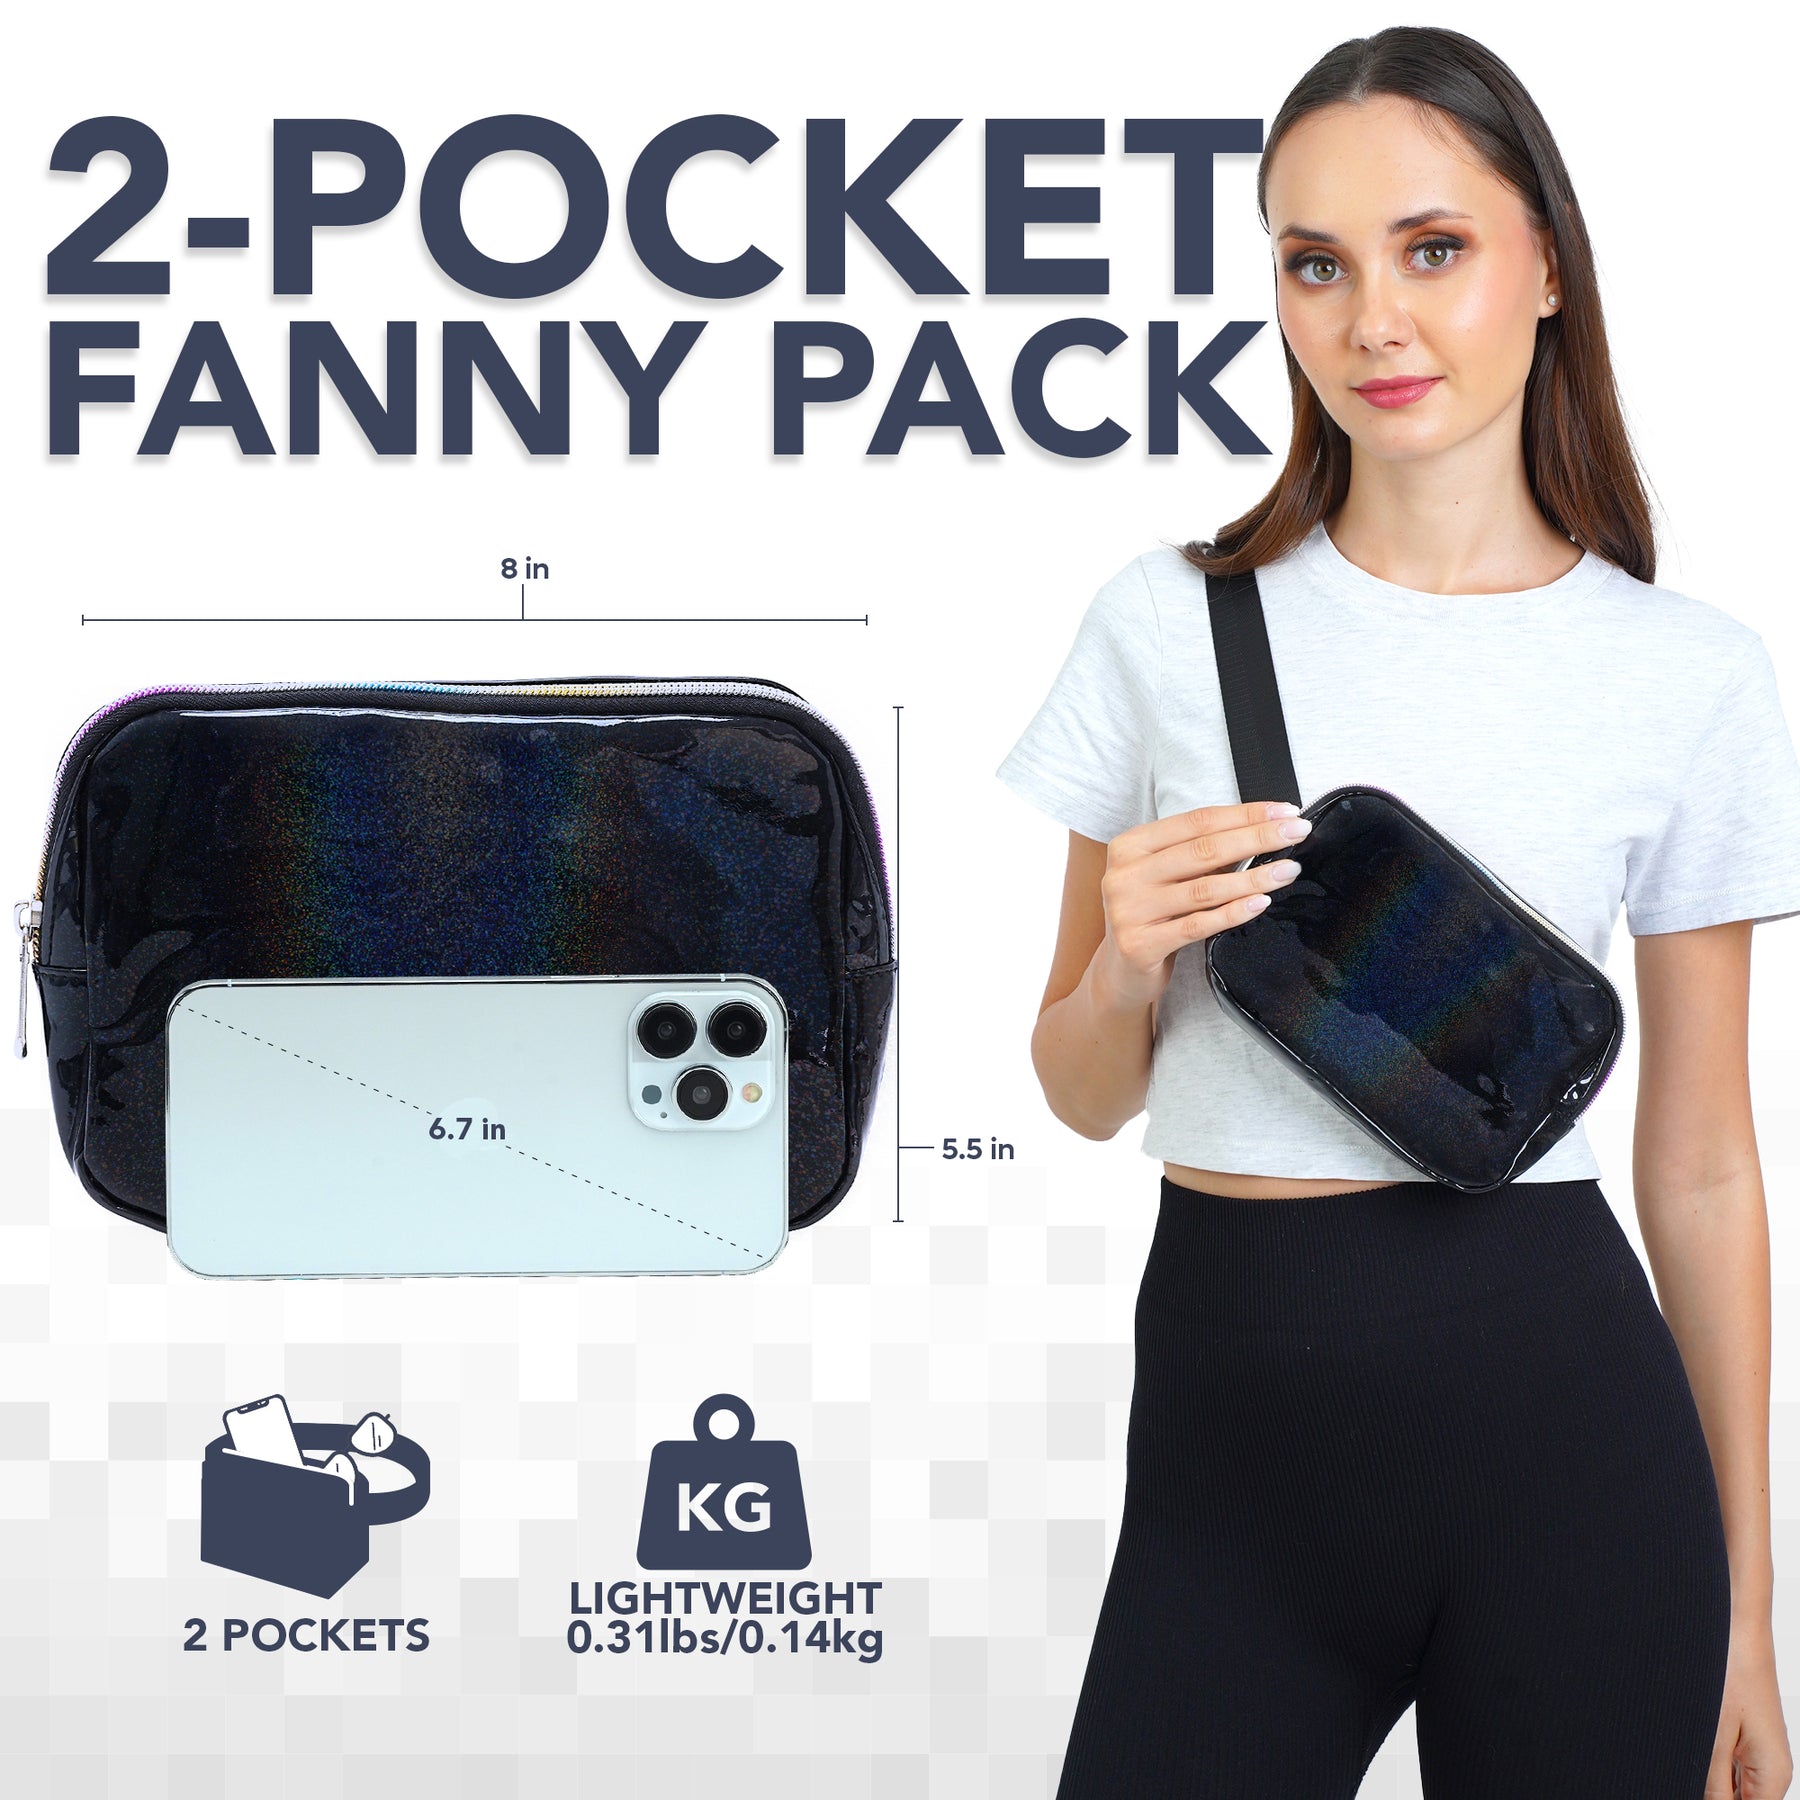 Black Rave Fanny Pack (Holographic) Belt Bag for Women I Cross Body Fanny Packs for Women - Crossbody Bags small Waist Bag Men